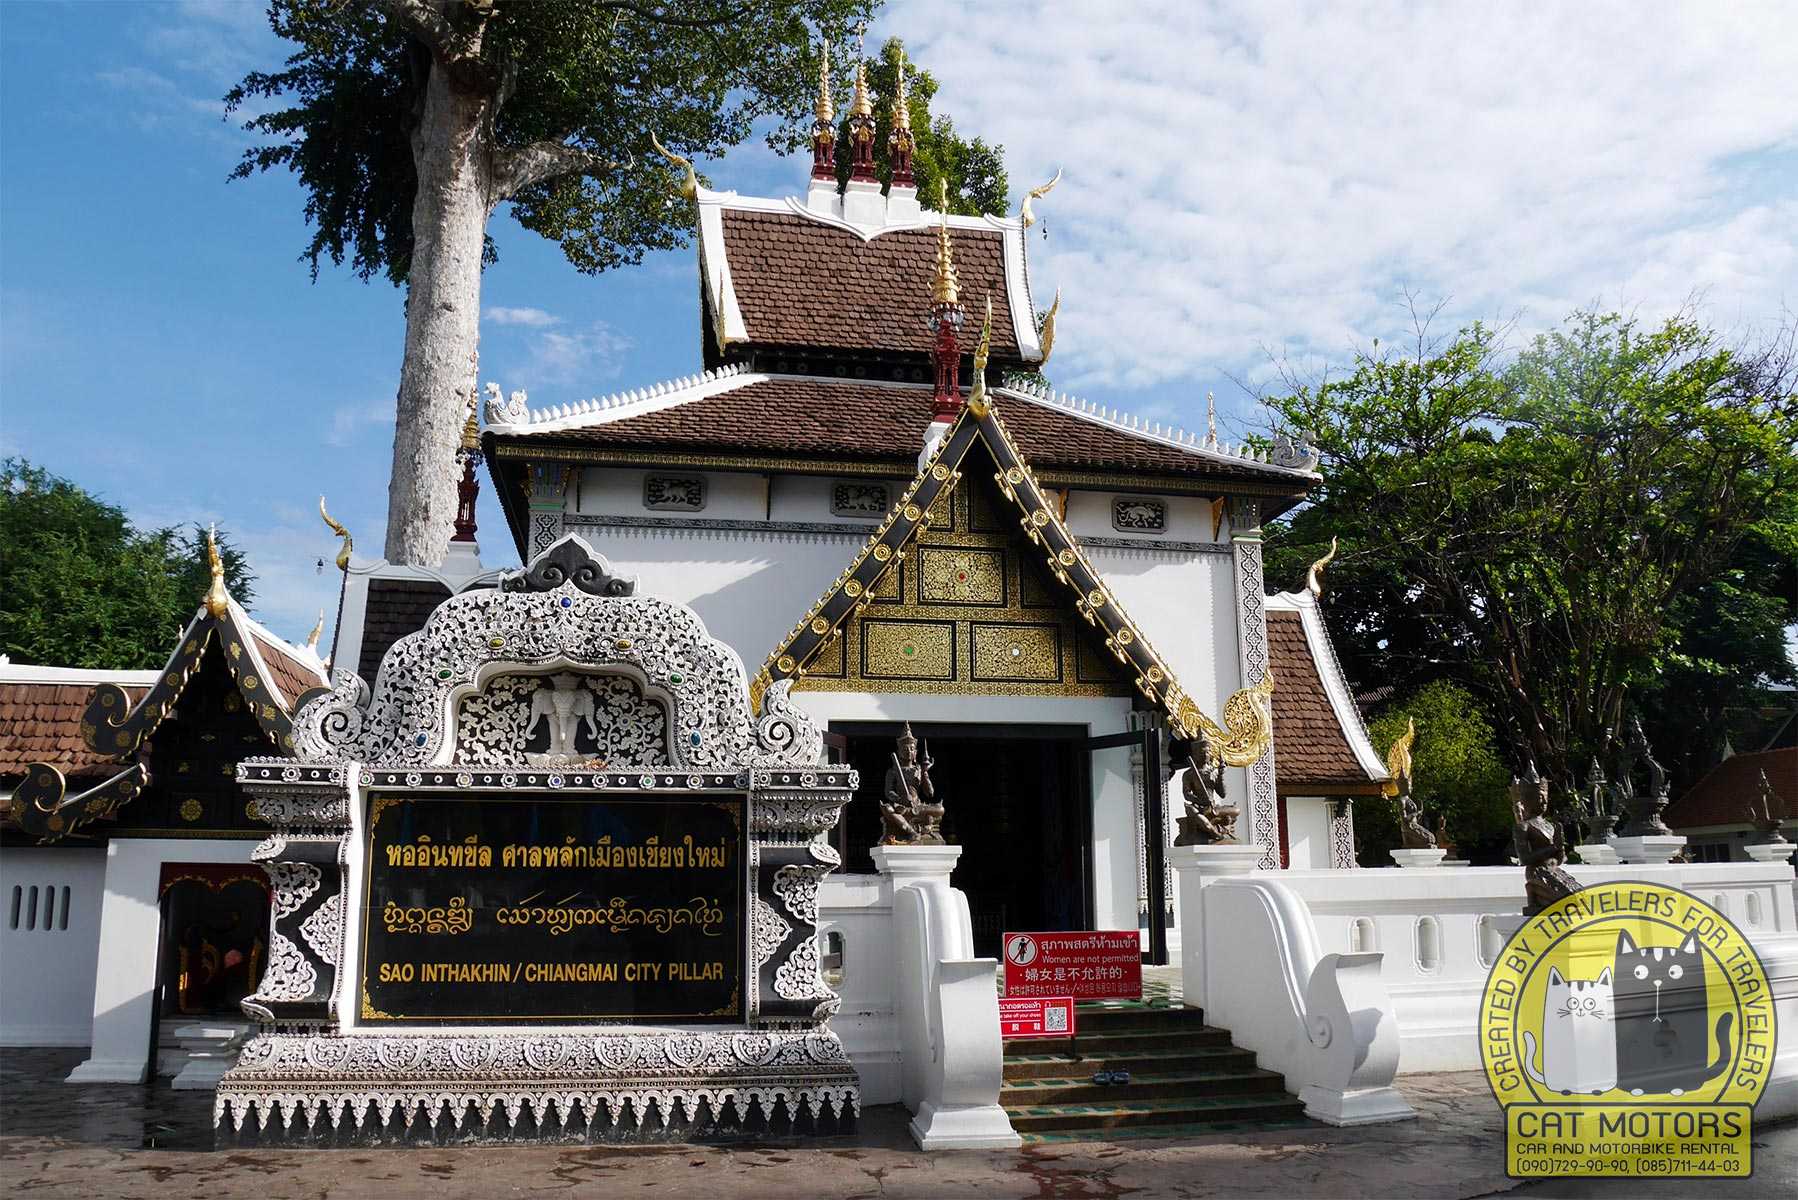 Sao Inthakin Chiang Mai City Pillar